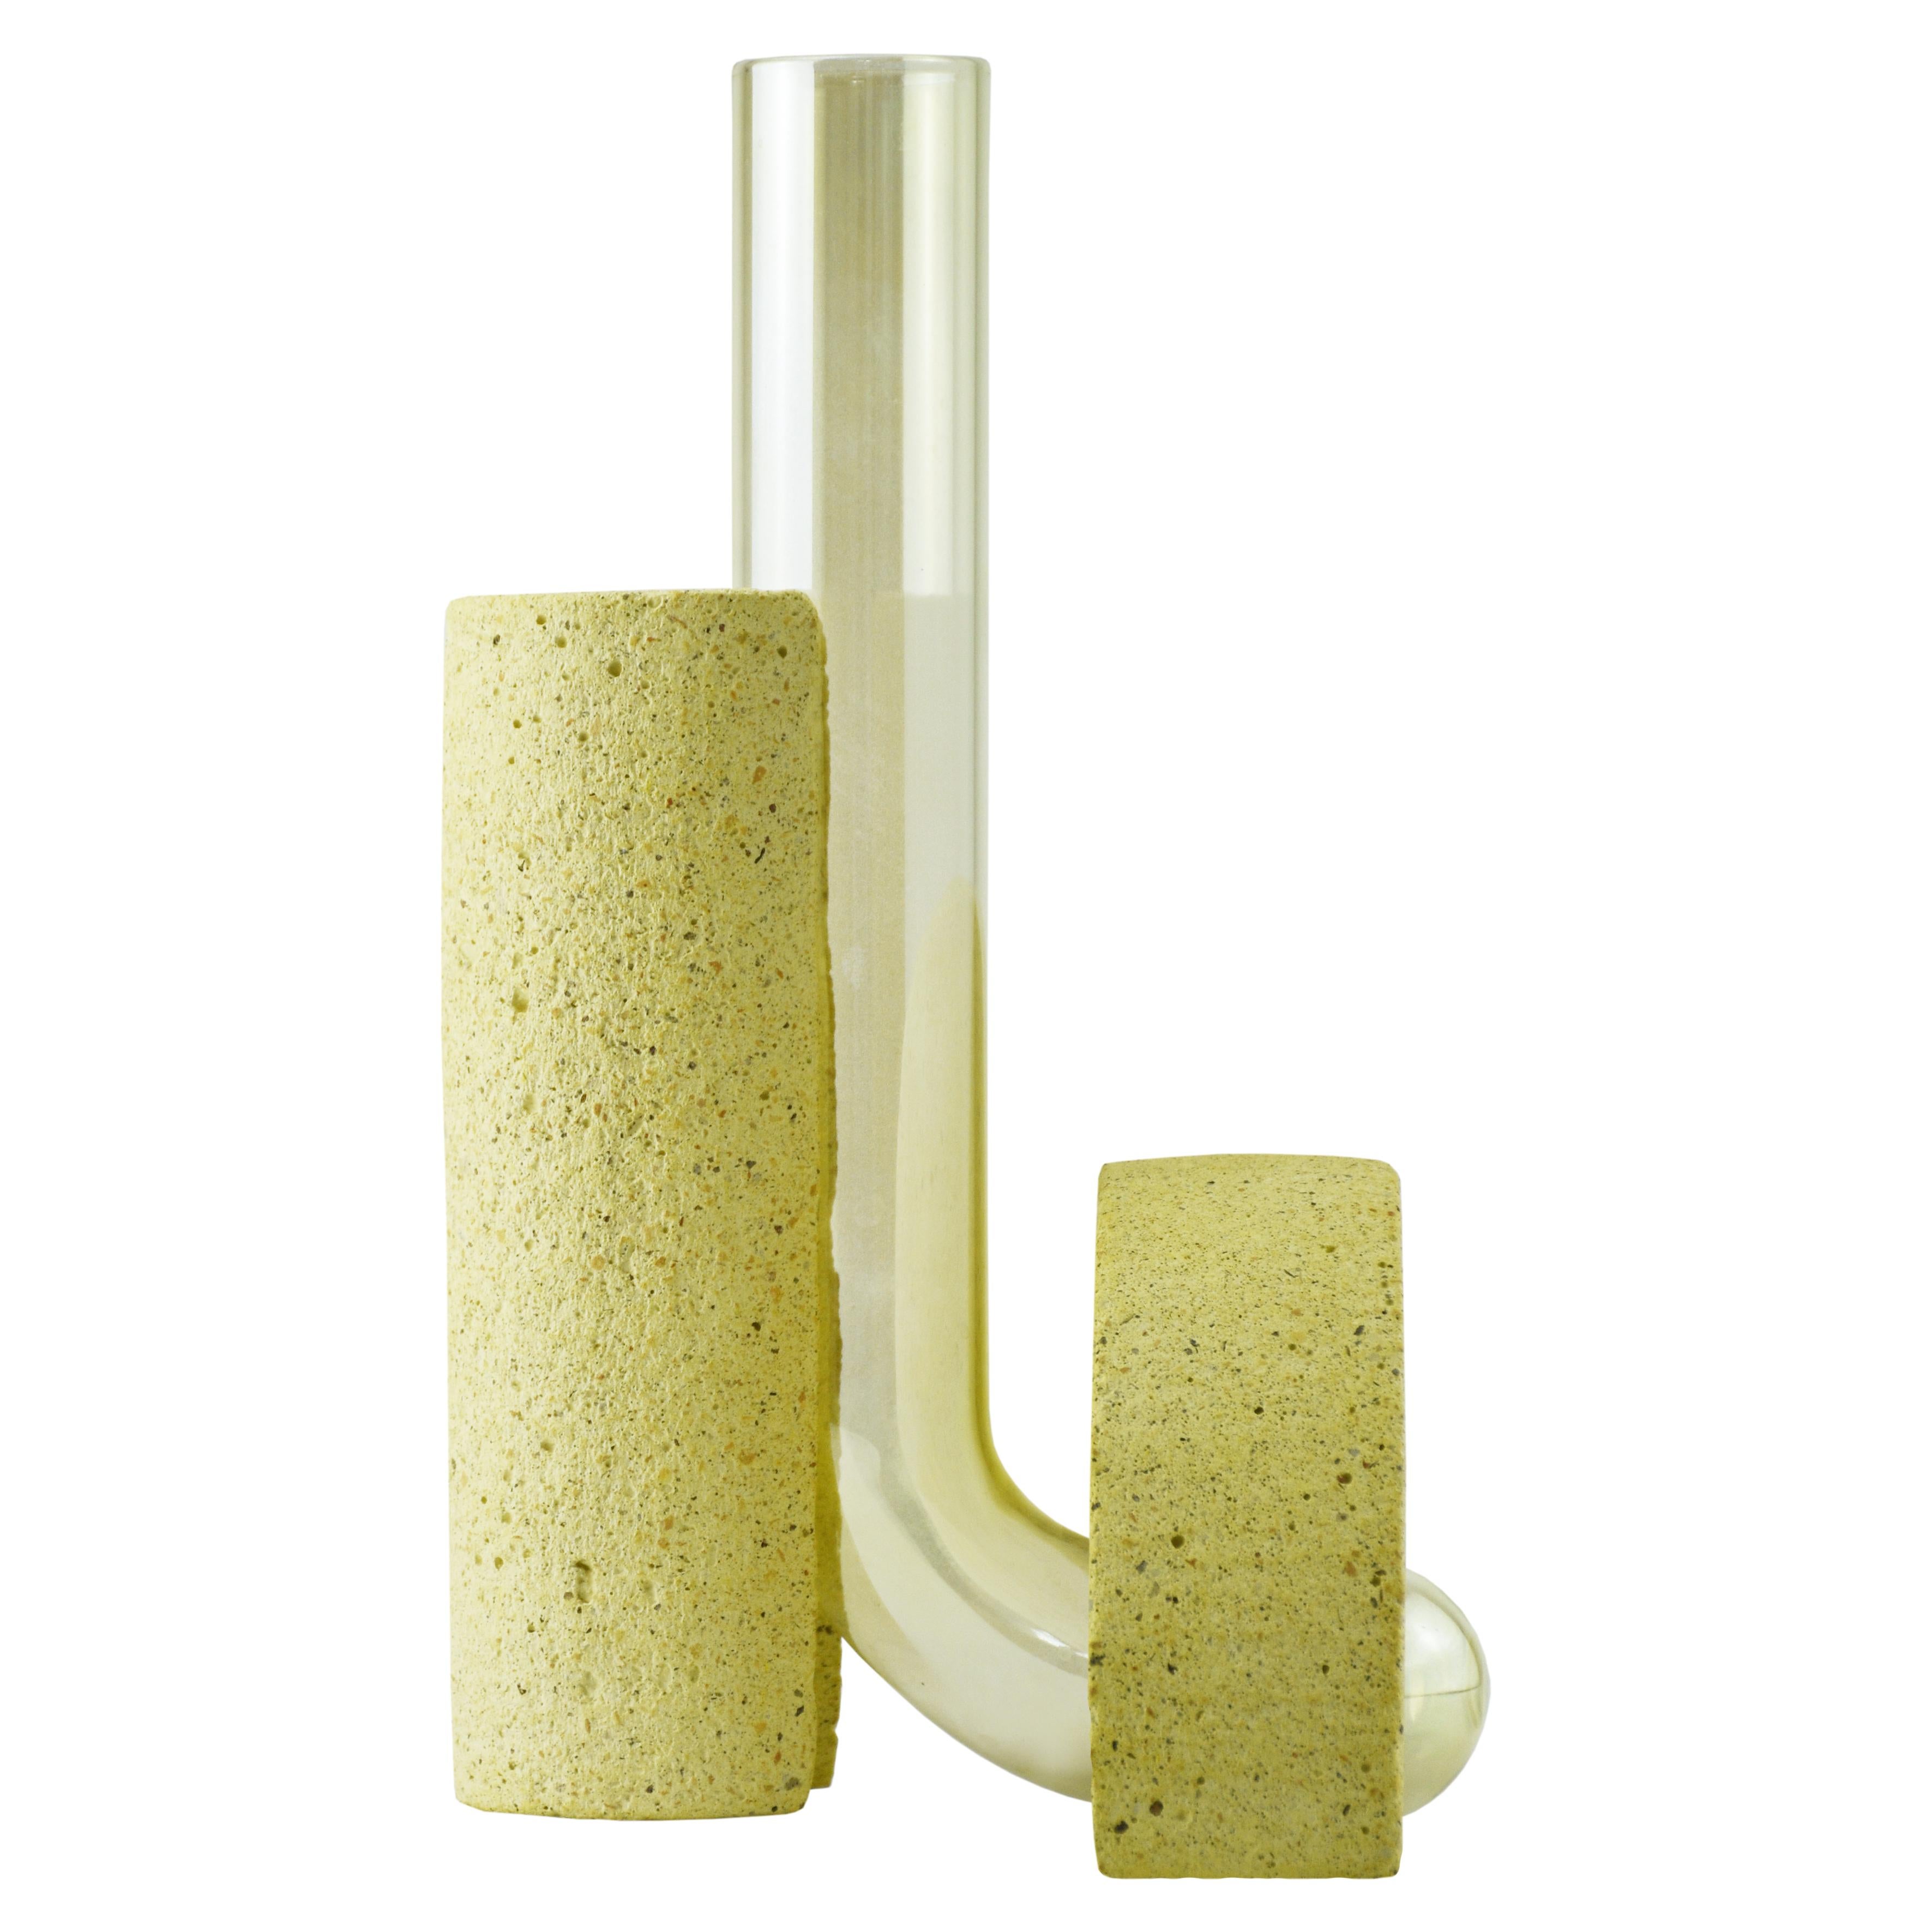 Vase en pierre jaune et en verre, design contemporain.
La collection de vases Cochleae s'inspire du cycle de vie des escargots et capture leur croissance lorsque le corps de l'invertébré (représenté par le verre incurvé) se développe vers le haut à